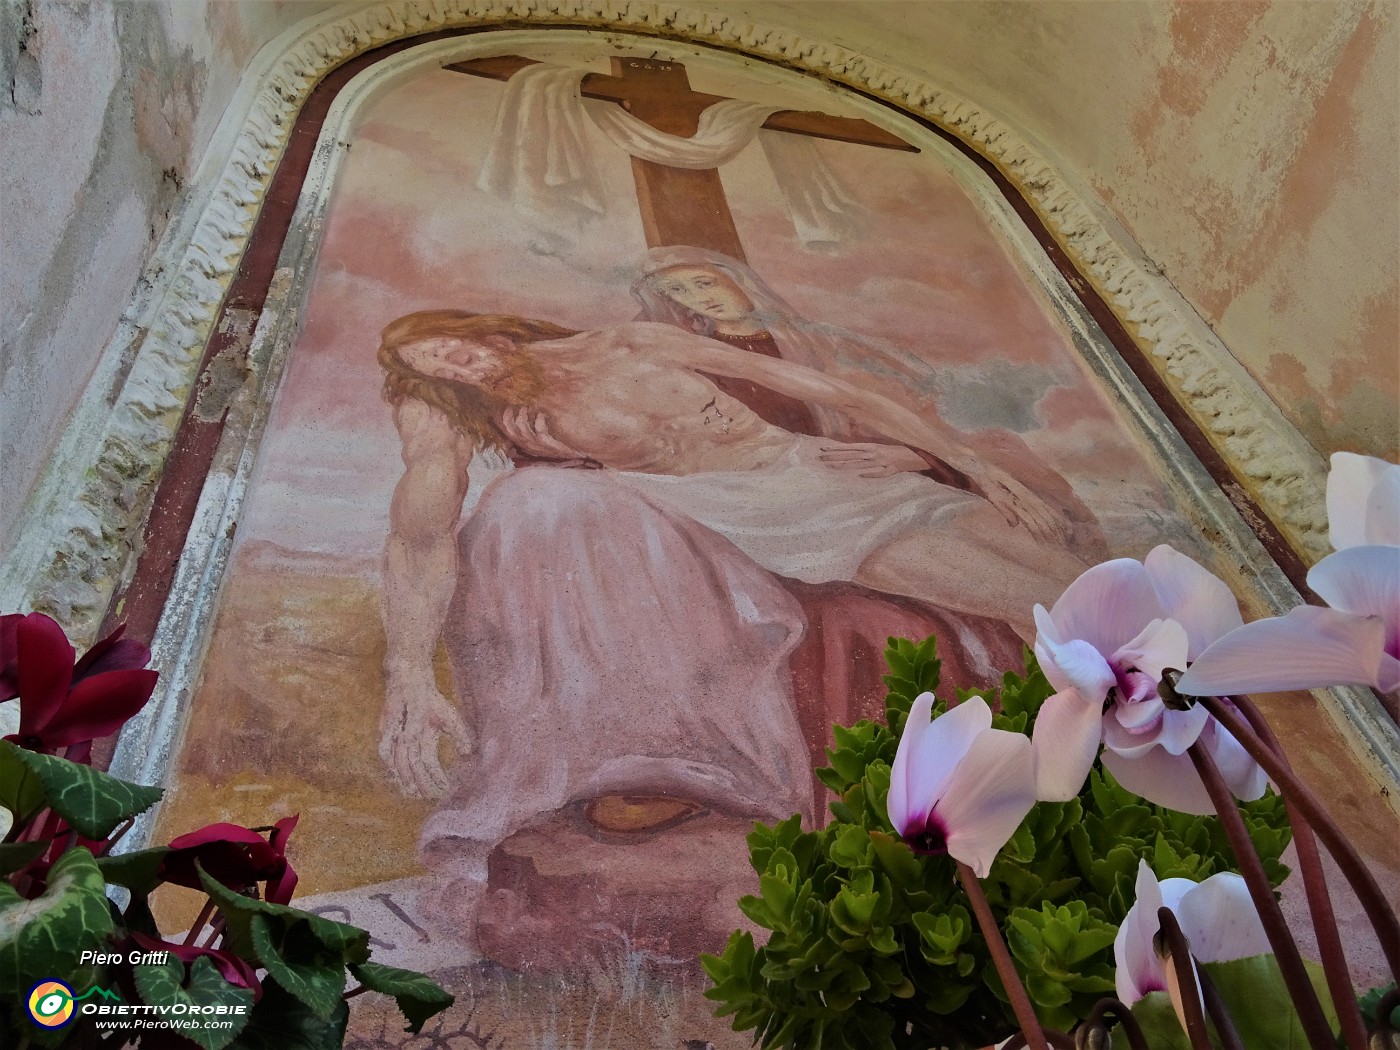 26 All'imbocco di Endenna santella Madonna con Cristo deposto dalla Croce.JPG